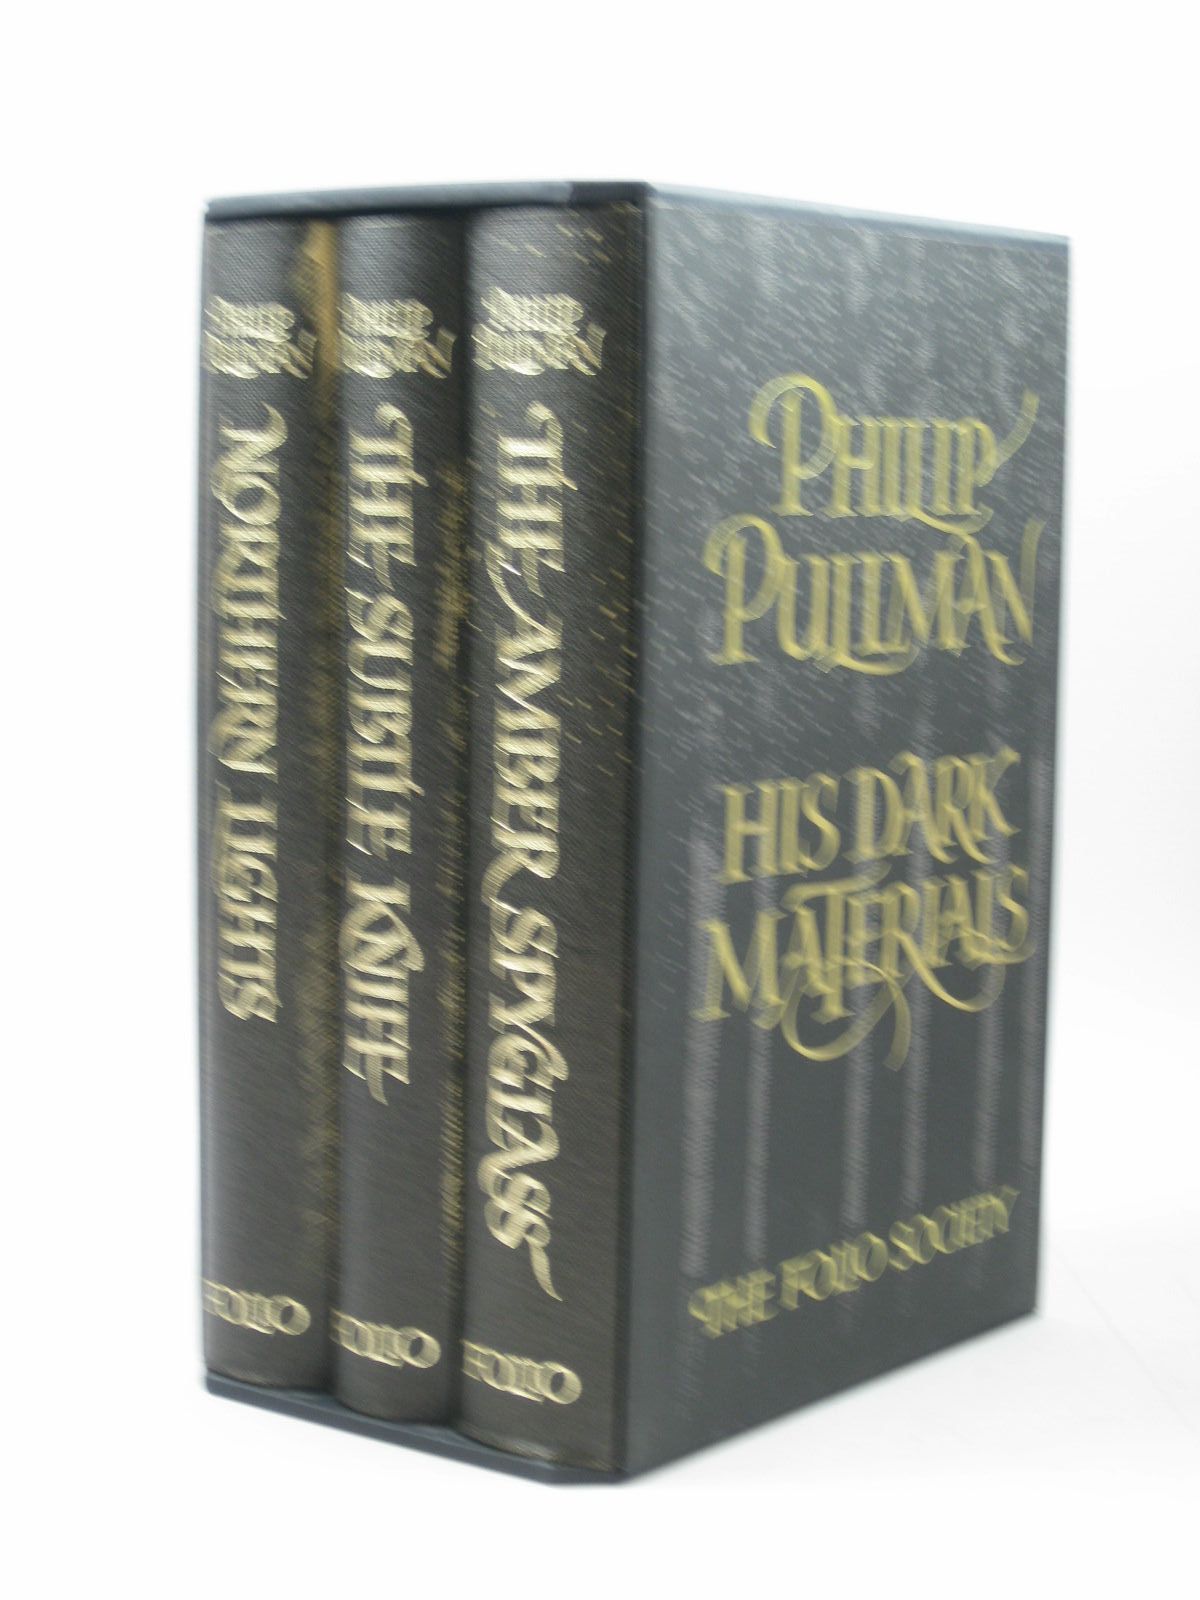 His Dark Materials (3 Volumes)